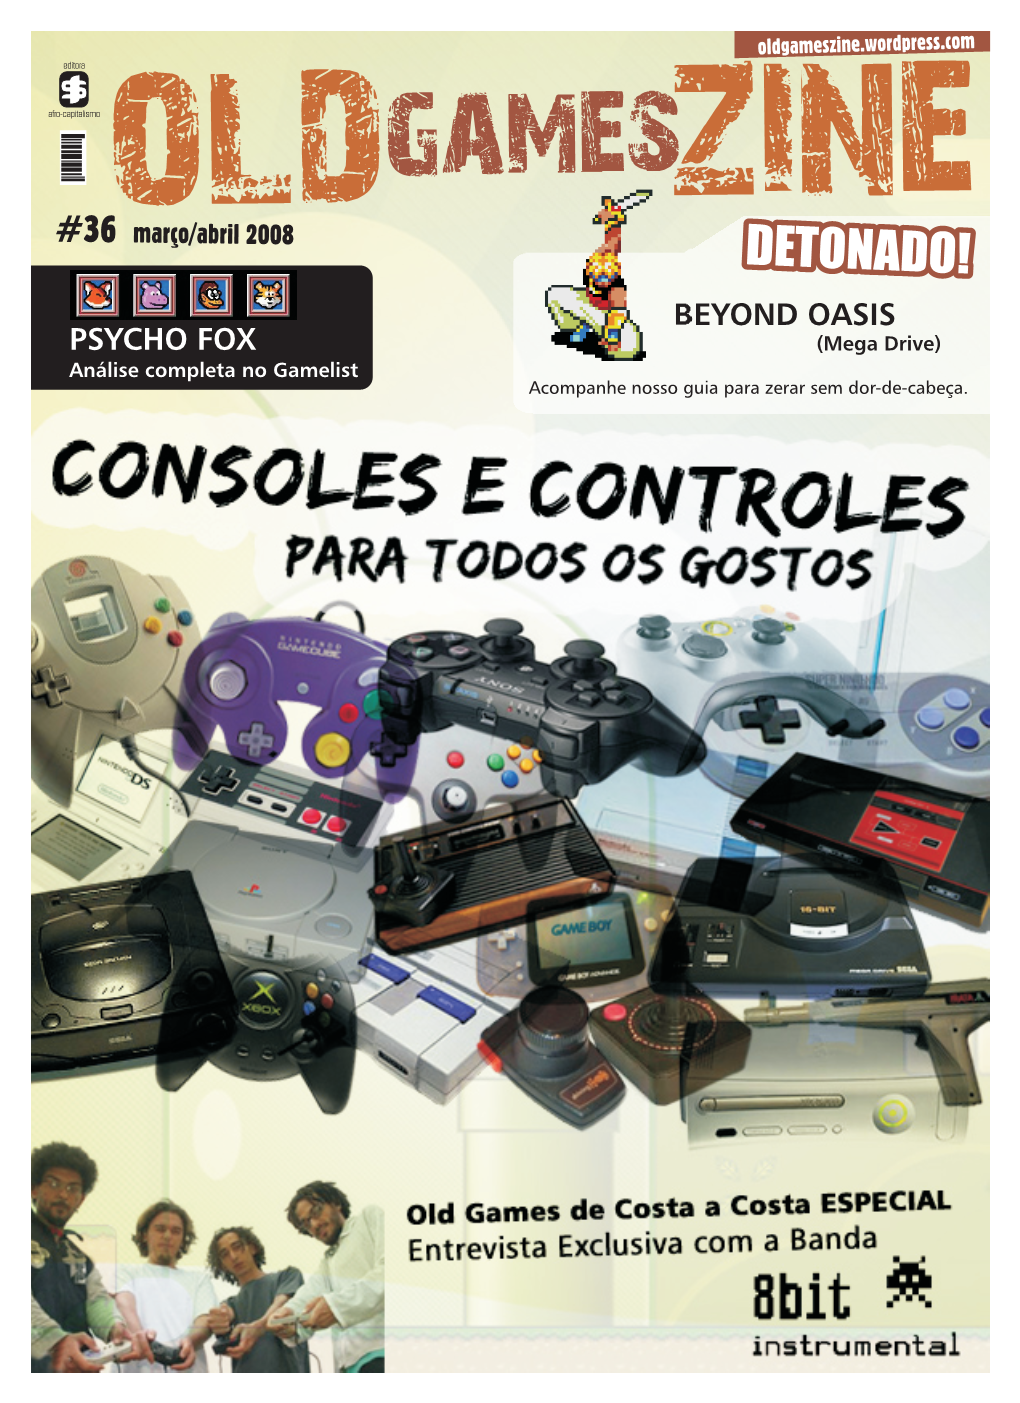 BEYOND OASIS PSYCHO FOX (Mega Drive) Análise Completa No Gamelist Acompanhe Nosso Guia Para Zerar Sem Dor-De-Cabeça